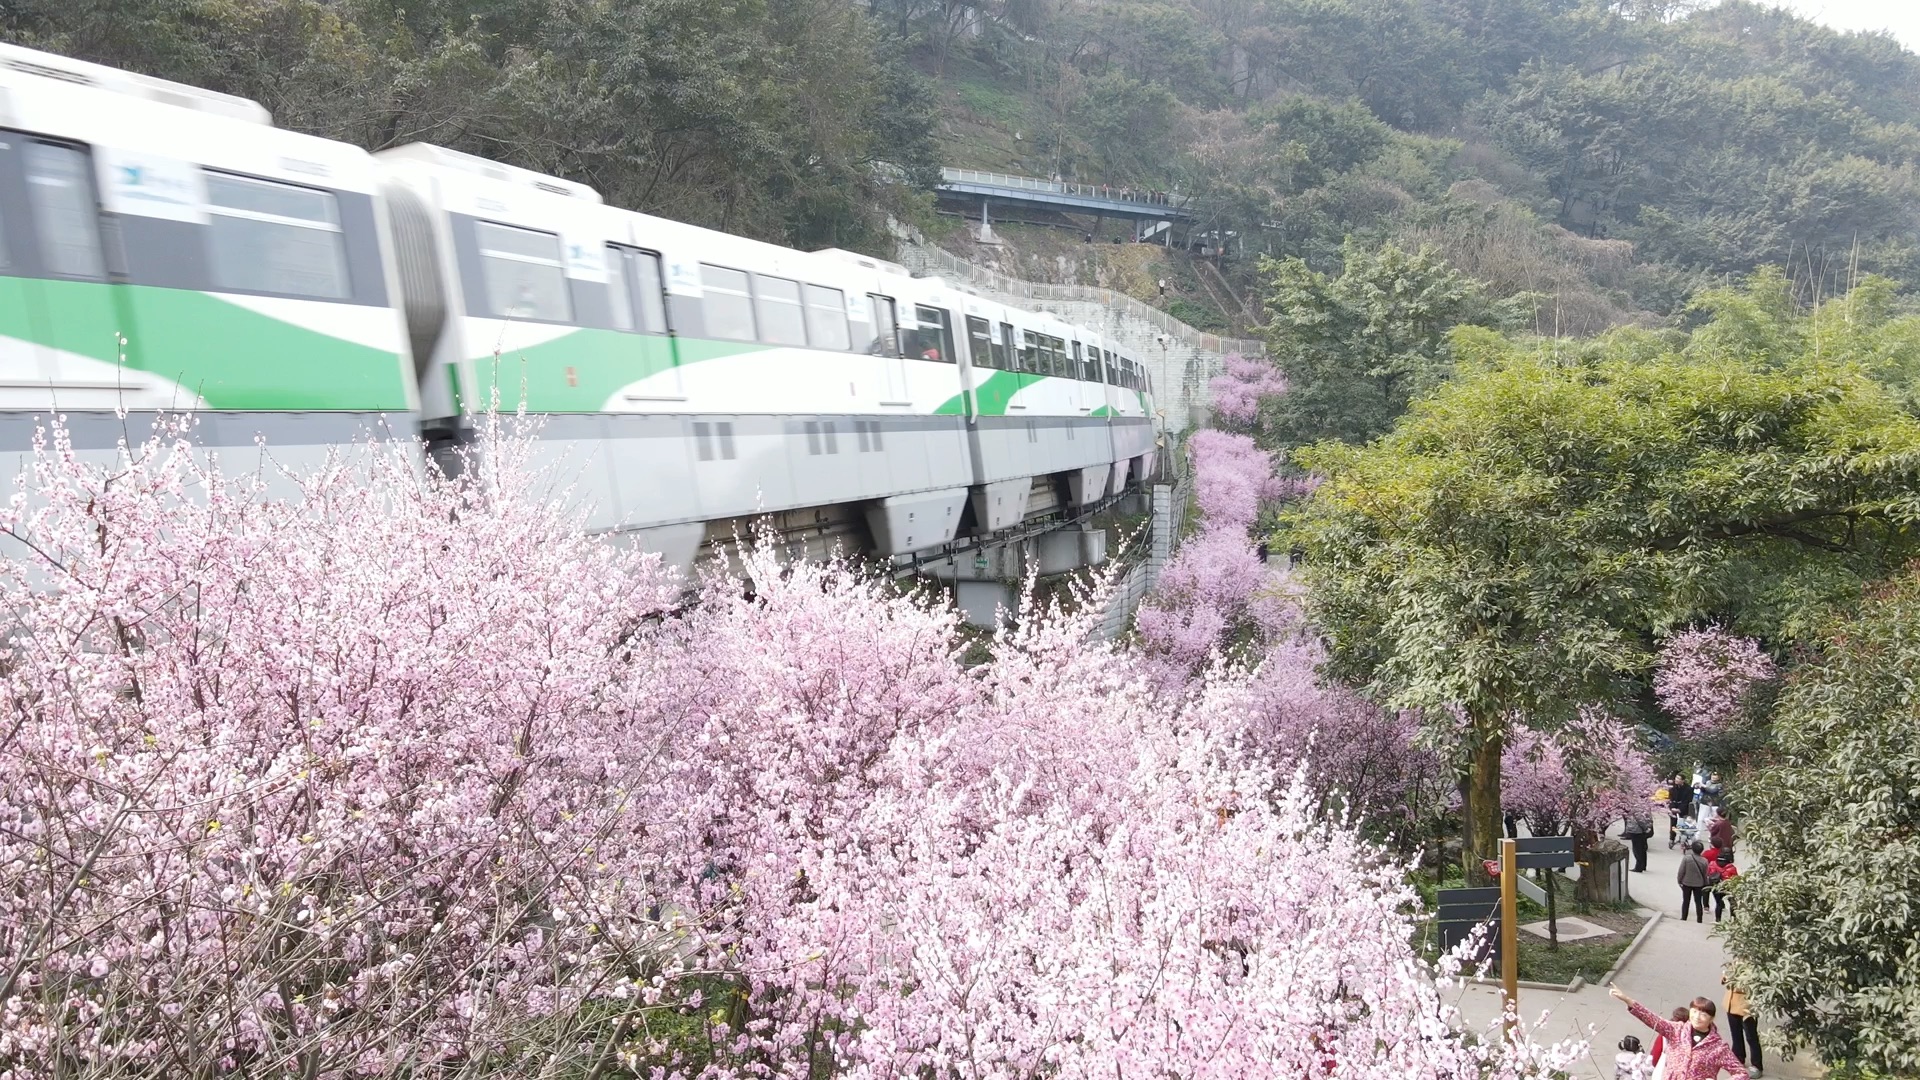 重庆地铁2号线,一列开往春天的列车,穿梭在花的海洋中